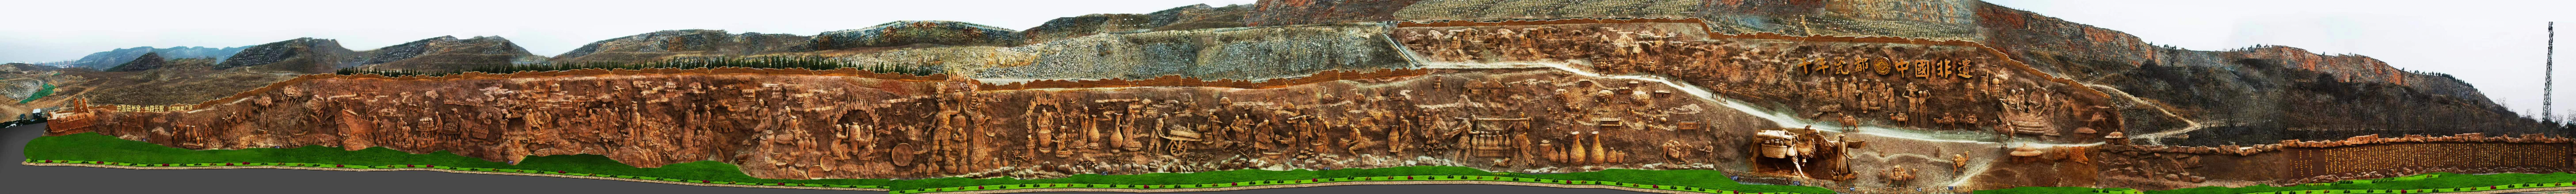 博鱼中国雨中观赏中国非遗瓷都巨型岩雕群穿越千年震撼不已 摄影纪实之四(图5)